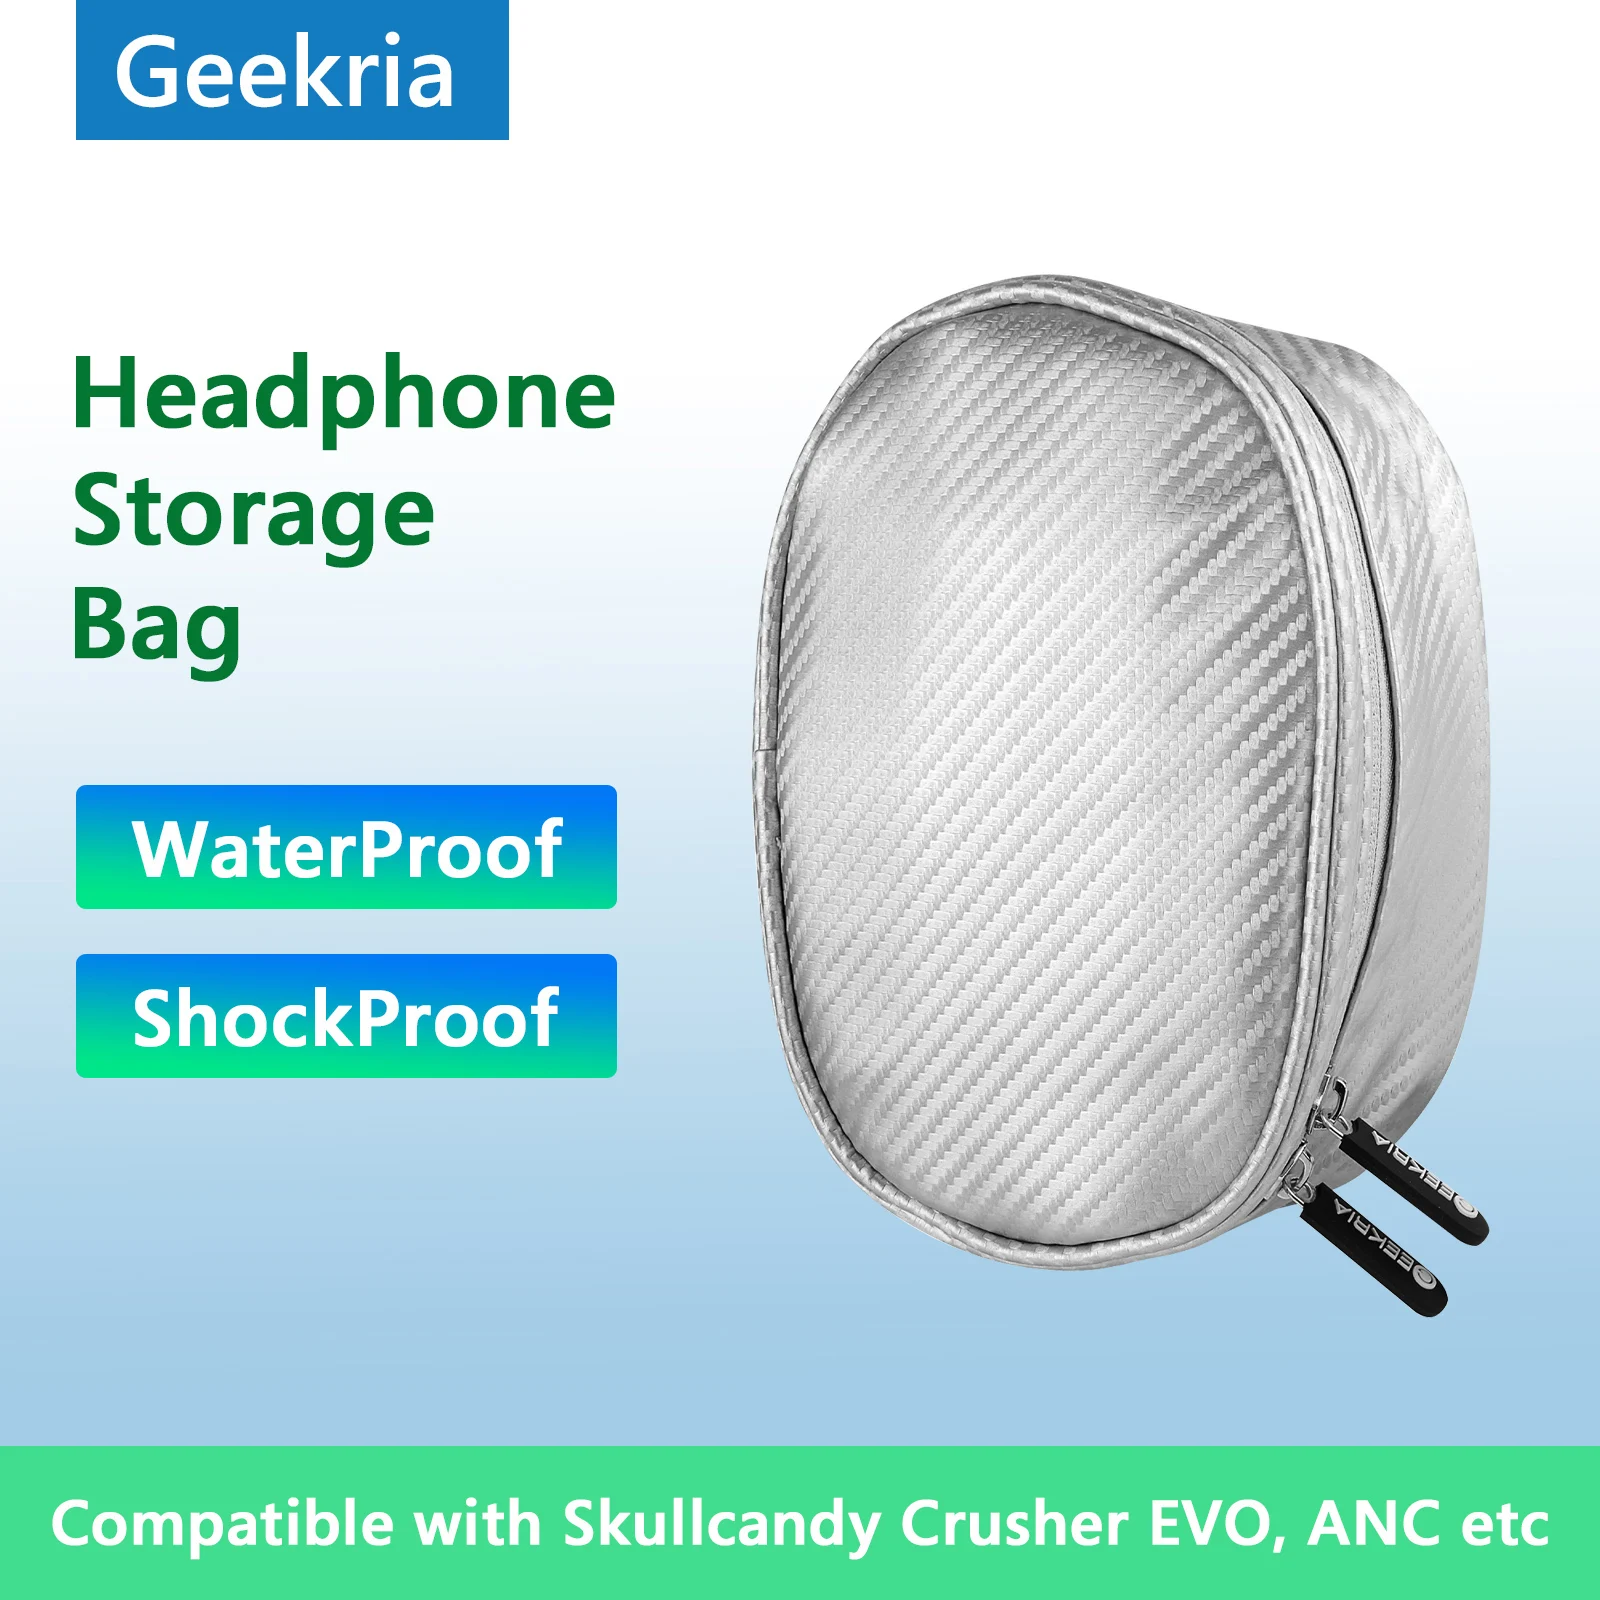 

Жесткий портативный чехол Geekria для наушников Skullcandy дробилка EVO Hesh 3 Bluetooth гарнитура сумка для аксессуаров